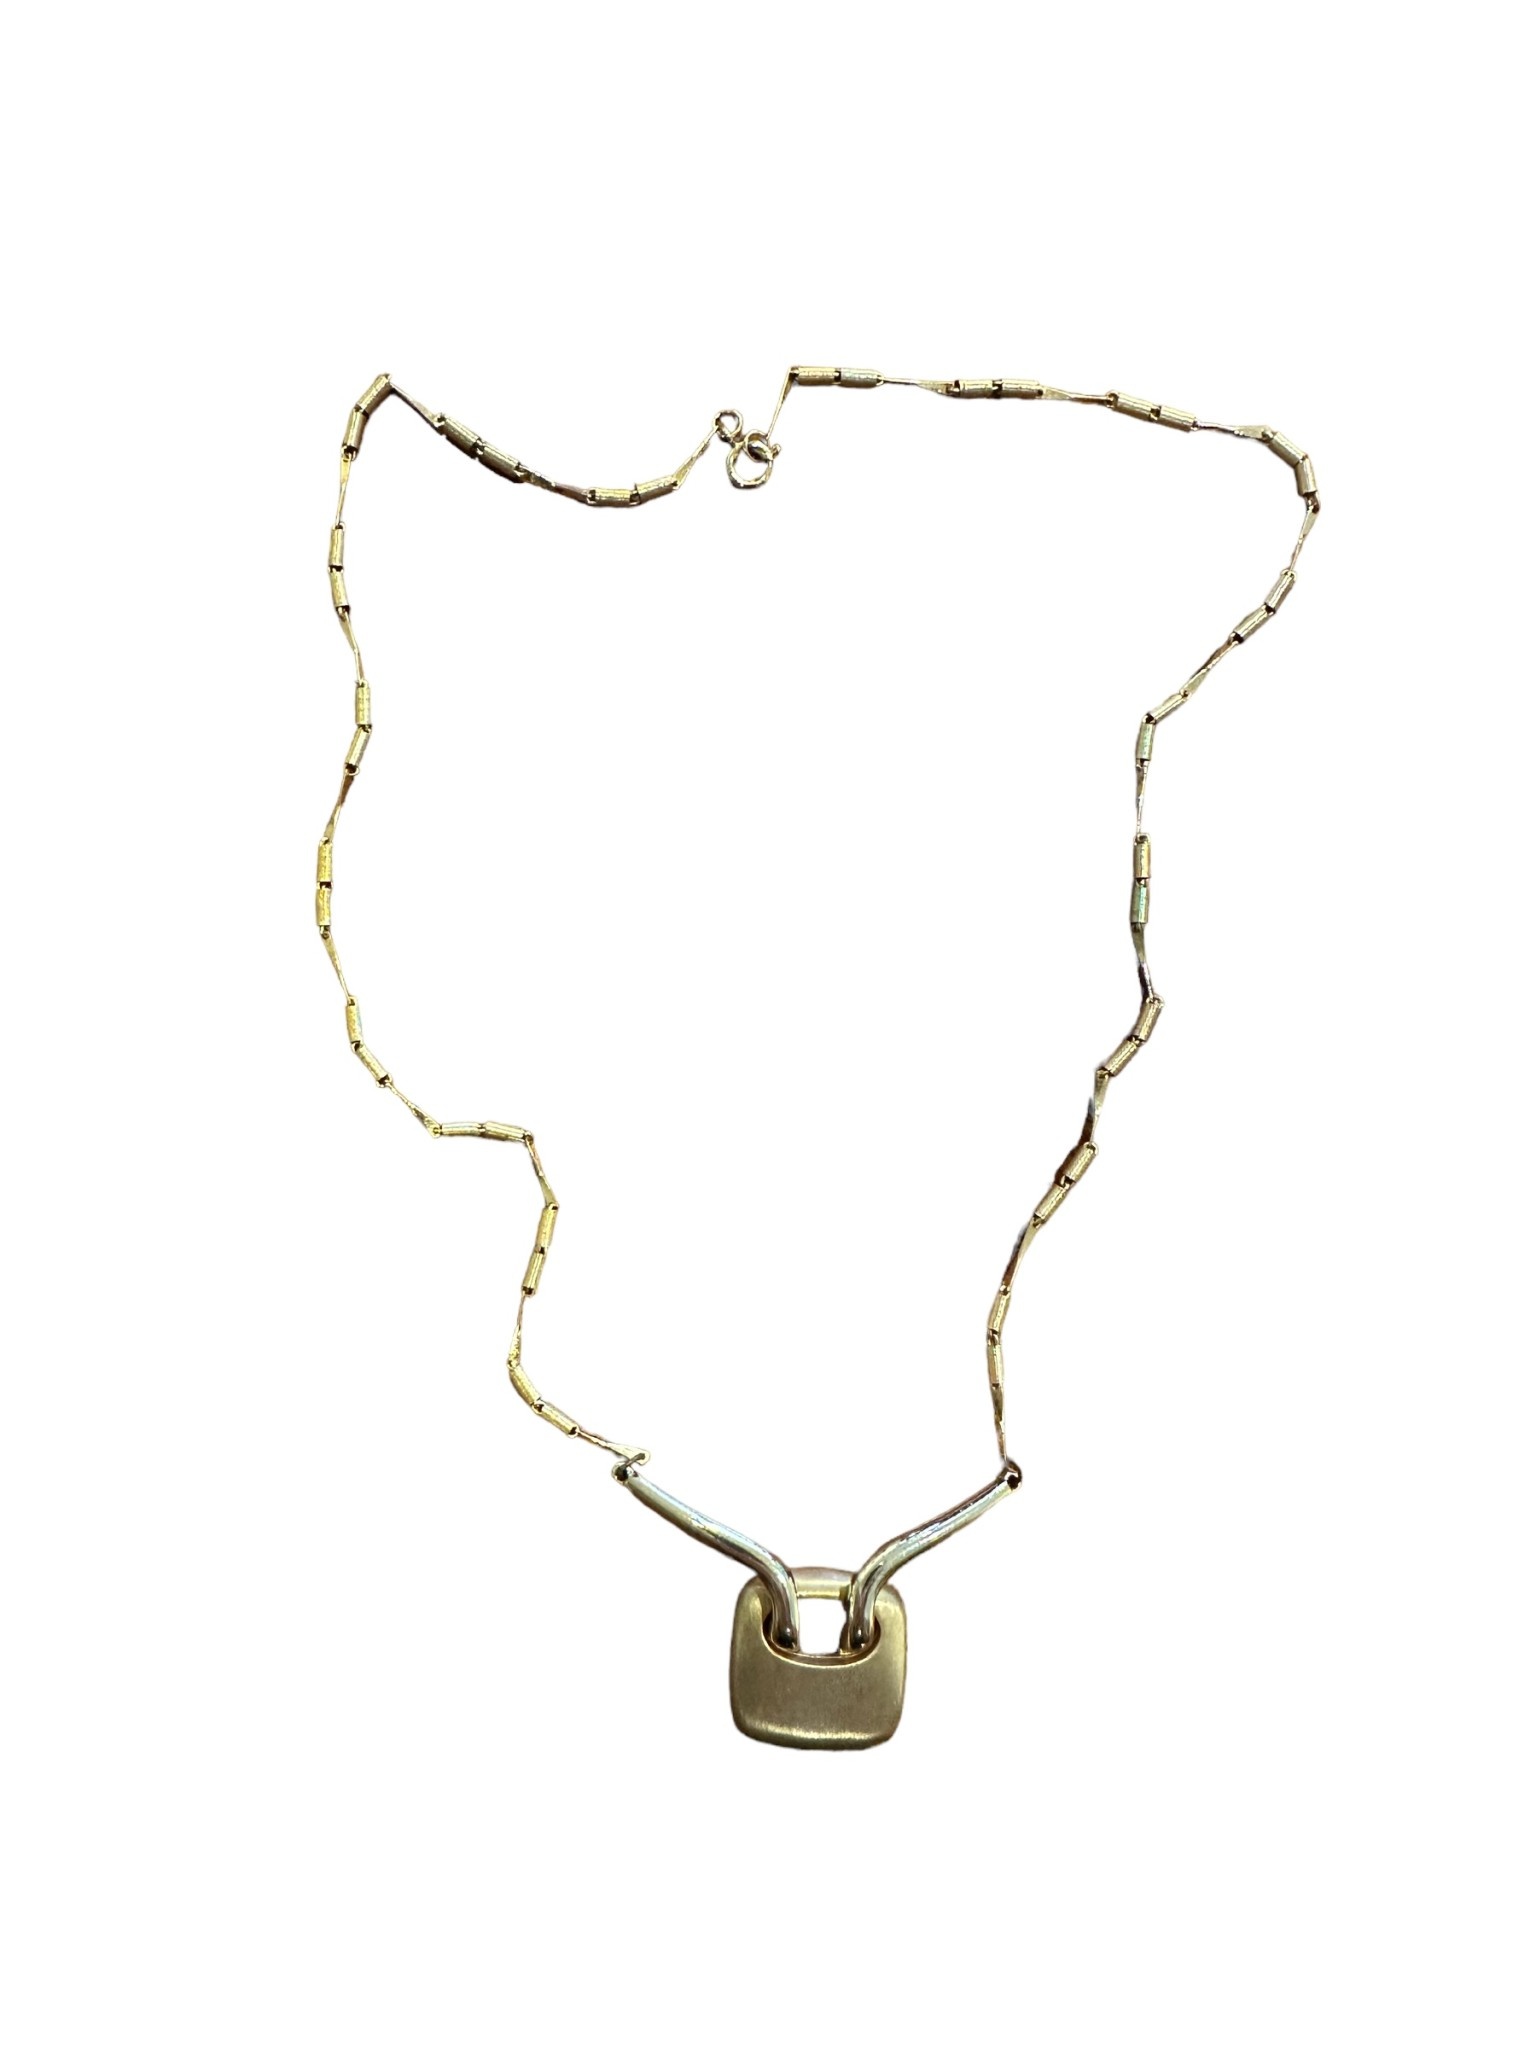 Vintage Gold Tone Necklace with Square Pendant - L50cm-1